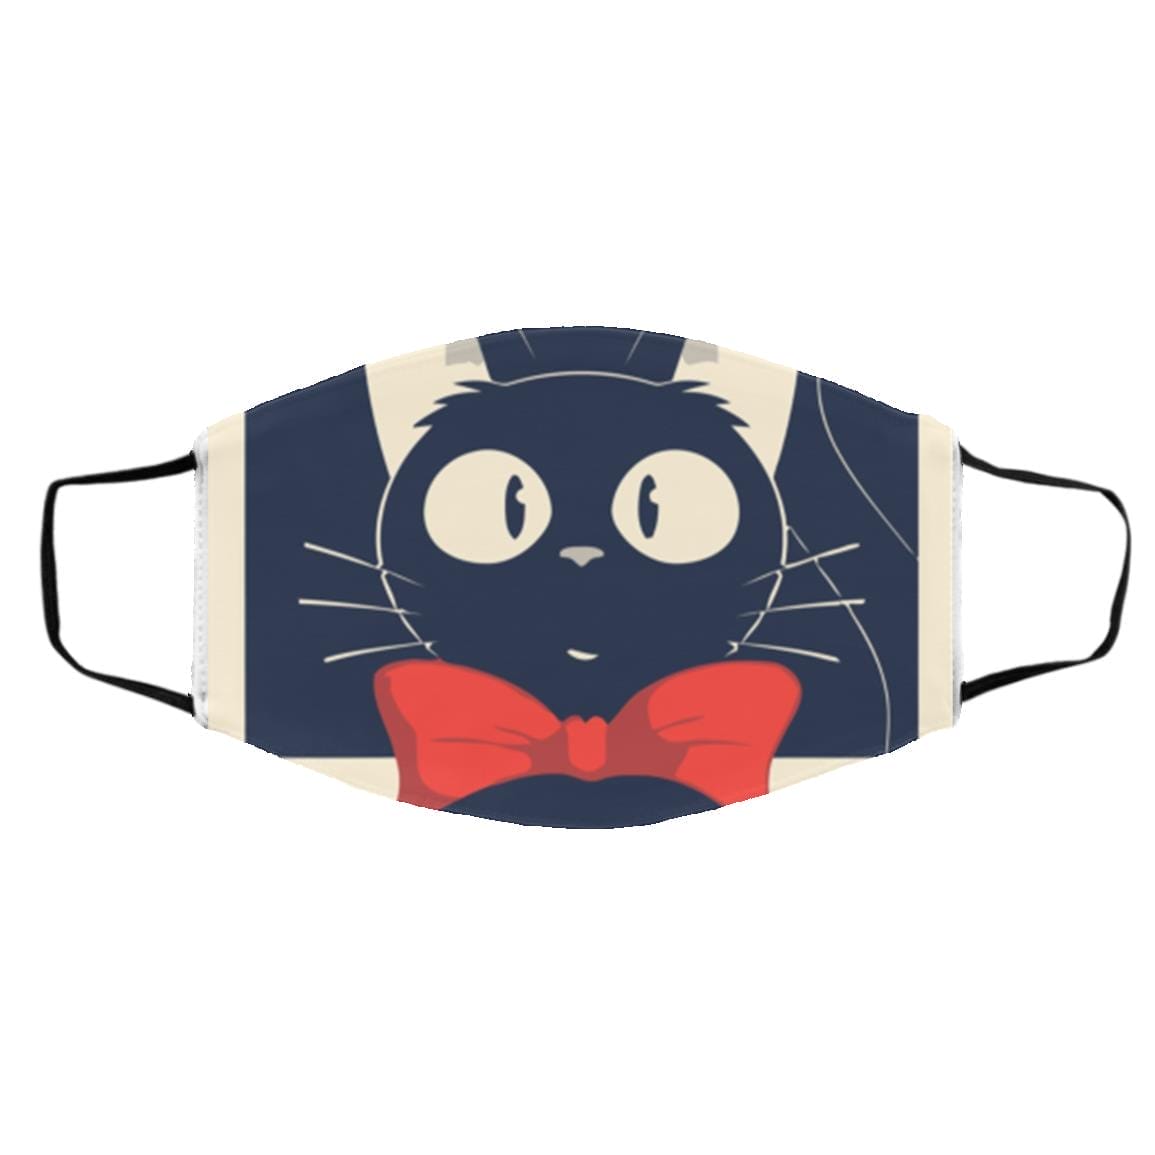 Kiki’s Delivery Service Jiji Face Mask